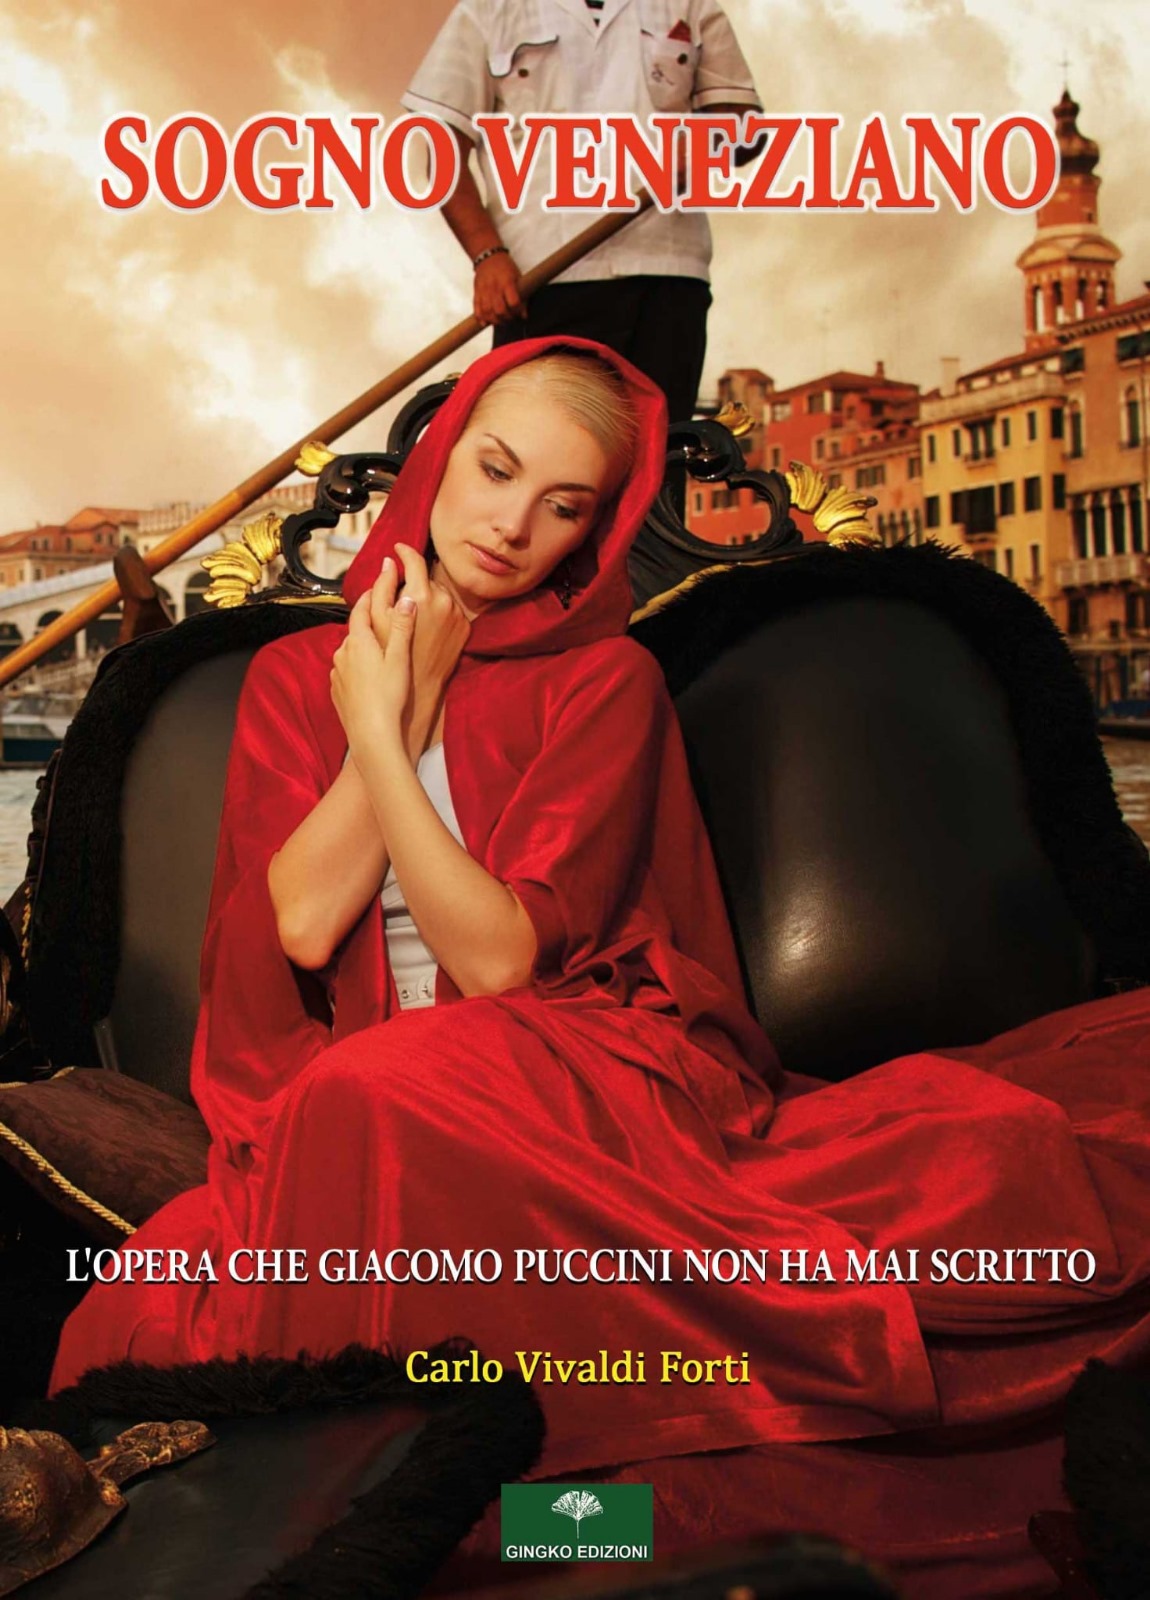 Venerdì,16 febbraio alle 21 Carlo Vivaldi Forti presenterà il suo libro “Sogno Veneziano”,l’opera che Puccini non fece in tempo a scrivere,